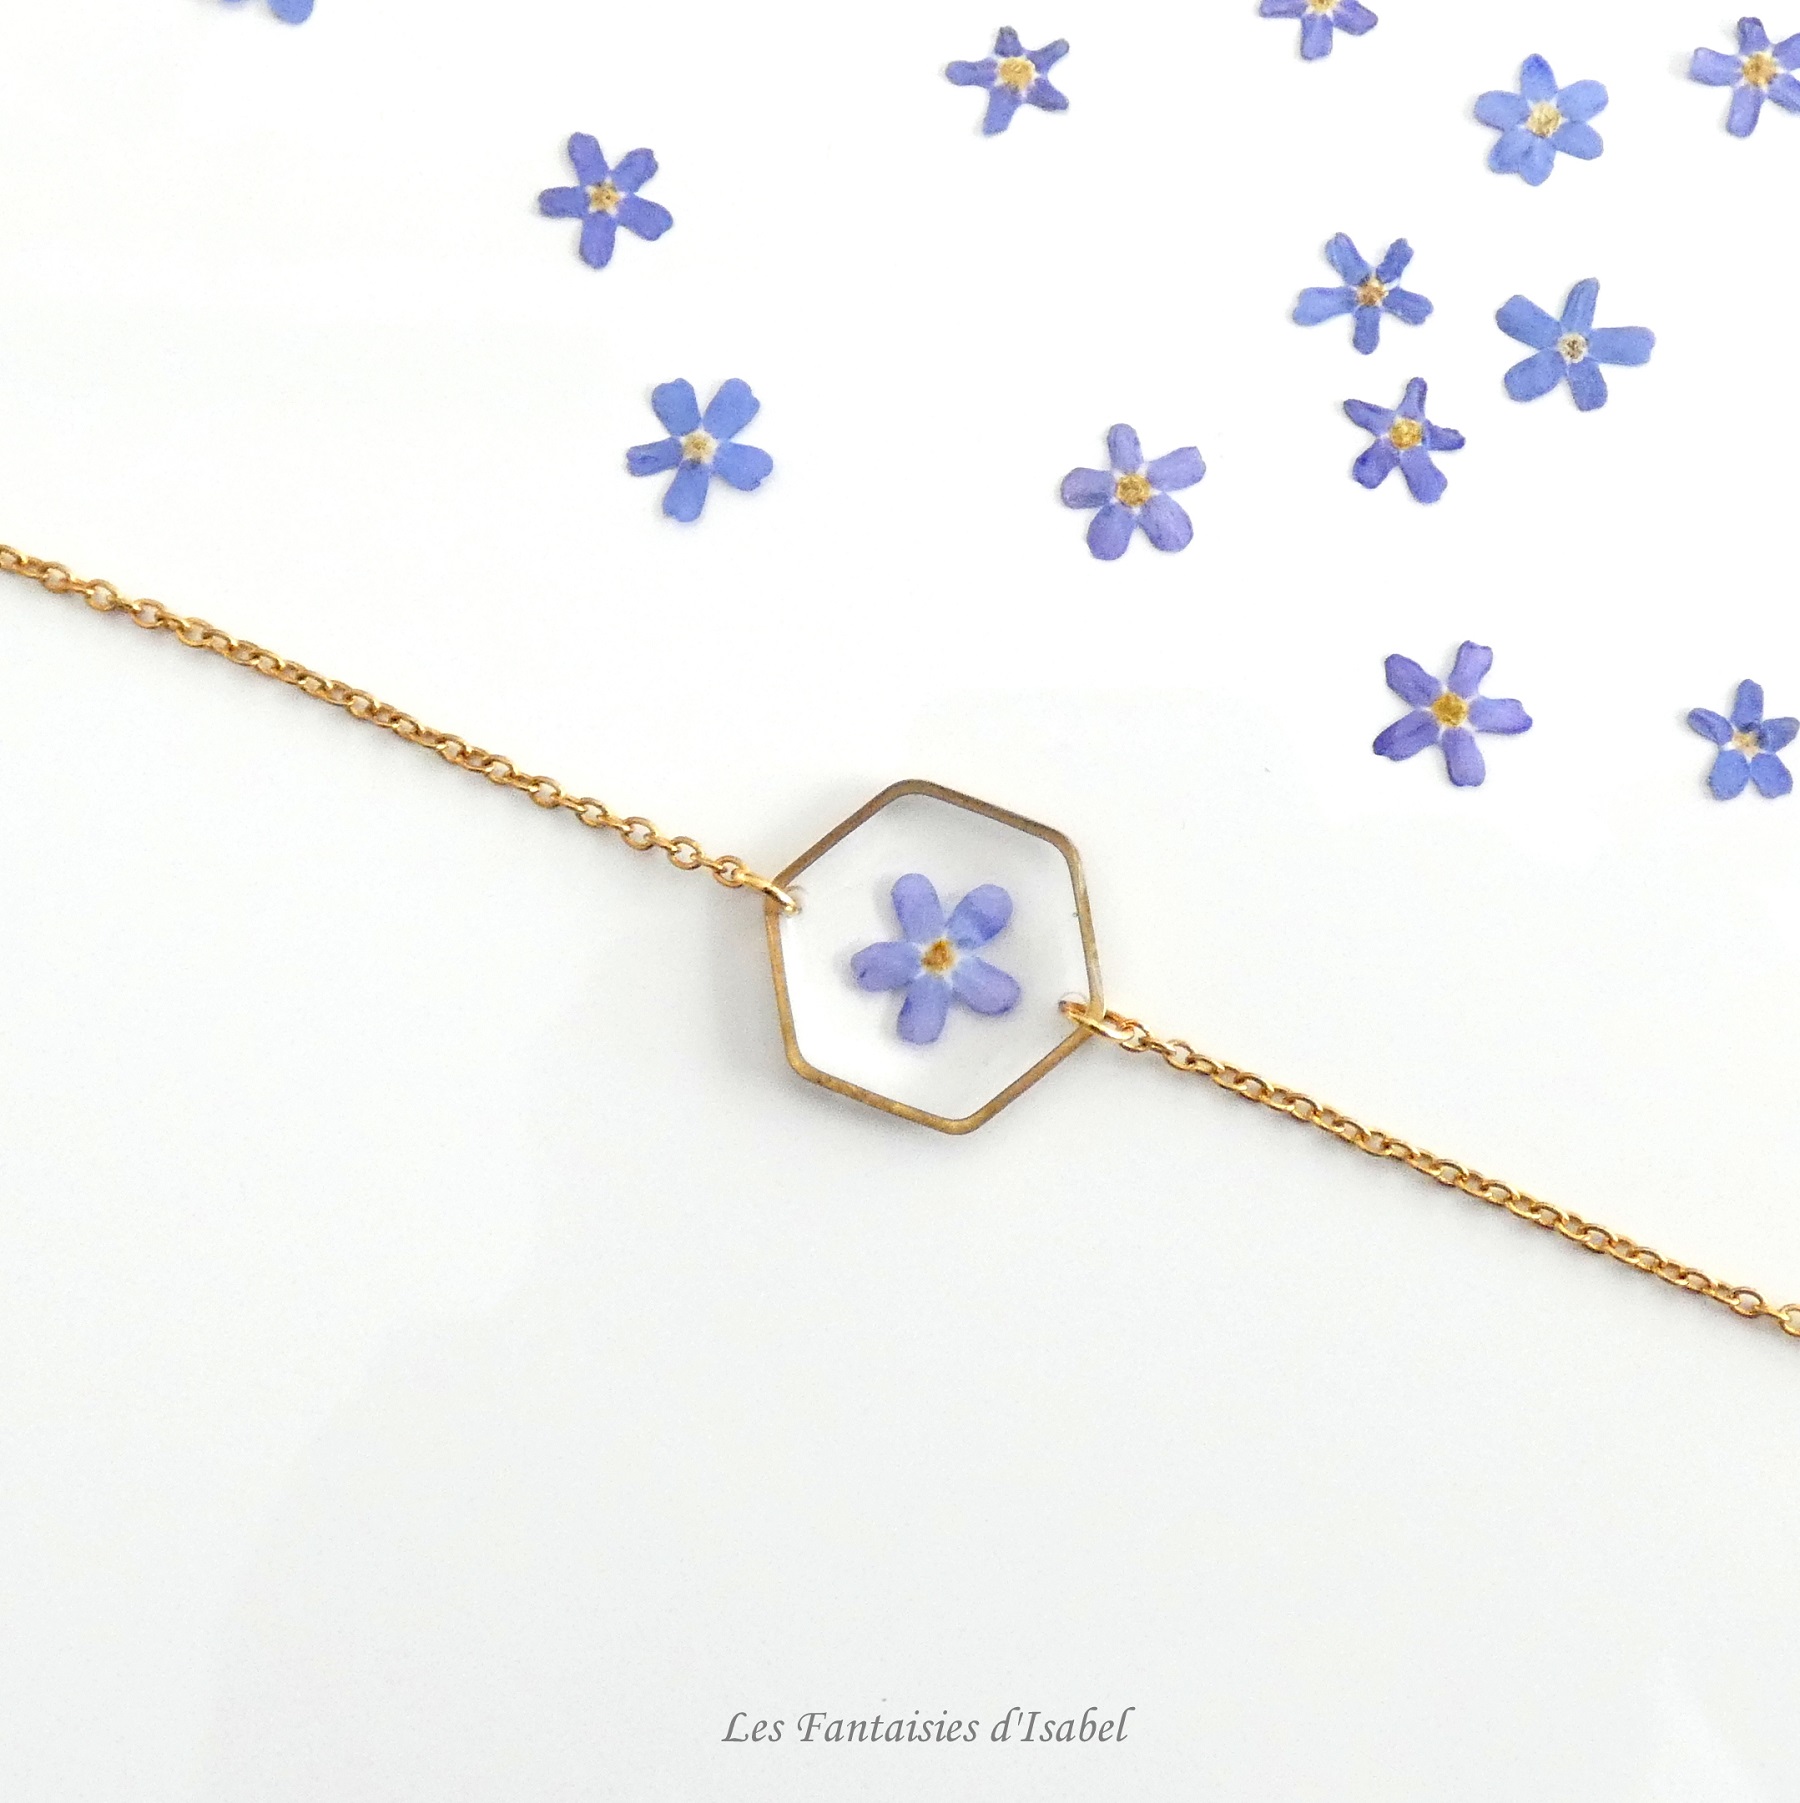 61-bracelet hesagonal acier inox doré fleur myosotis bleu artisanal landes détail